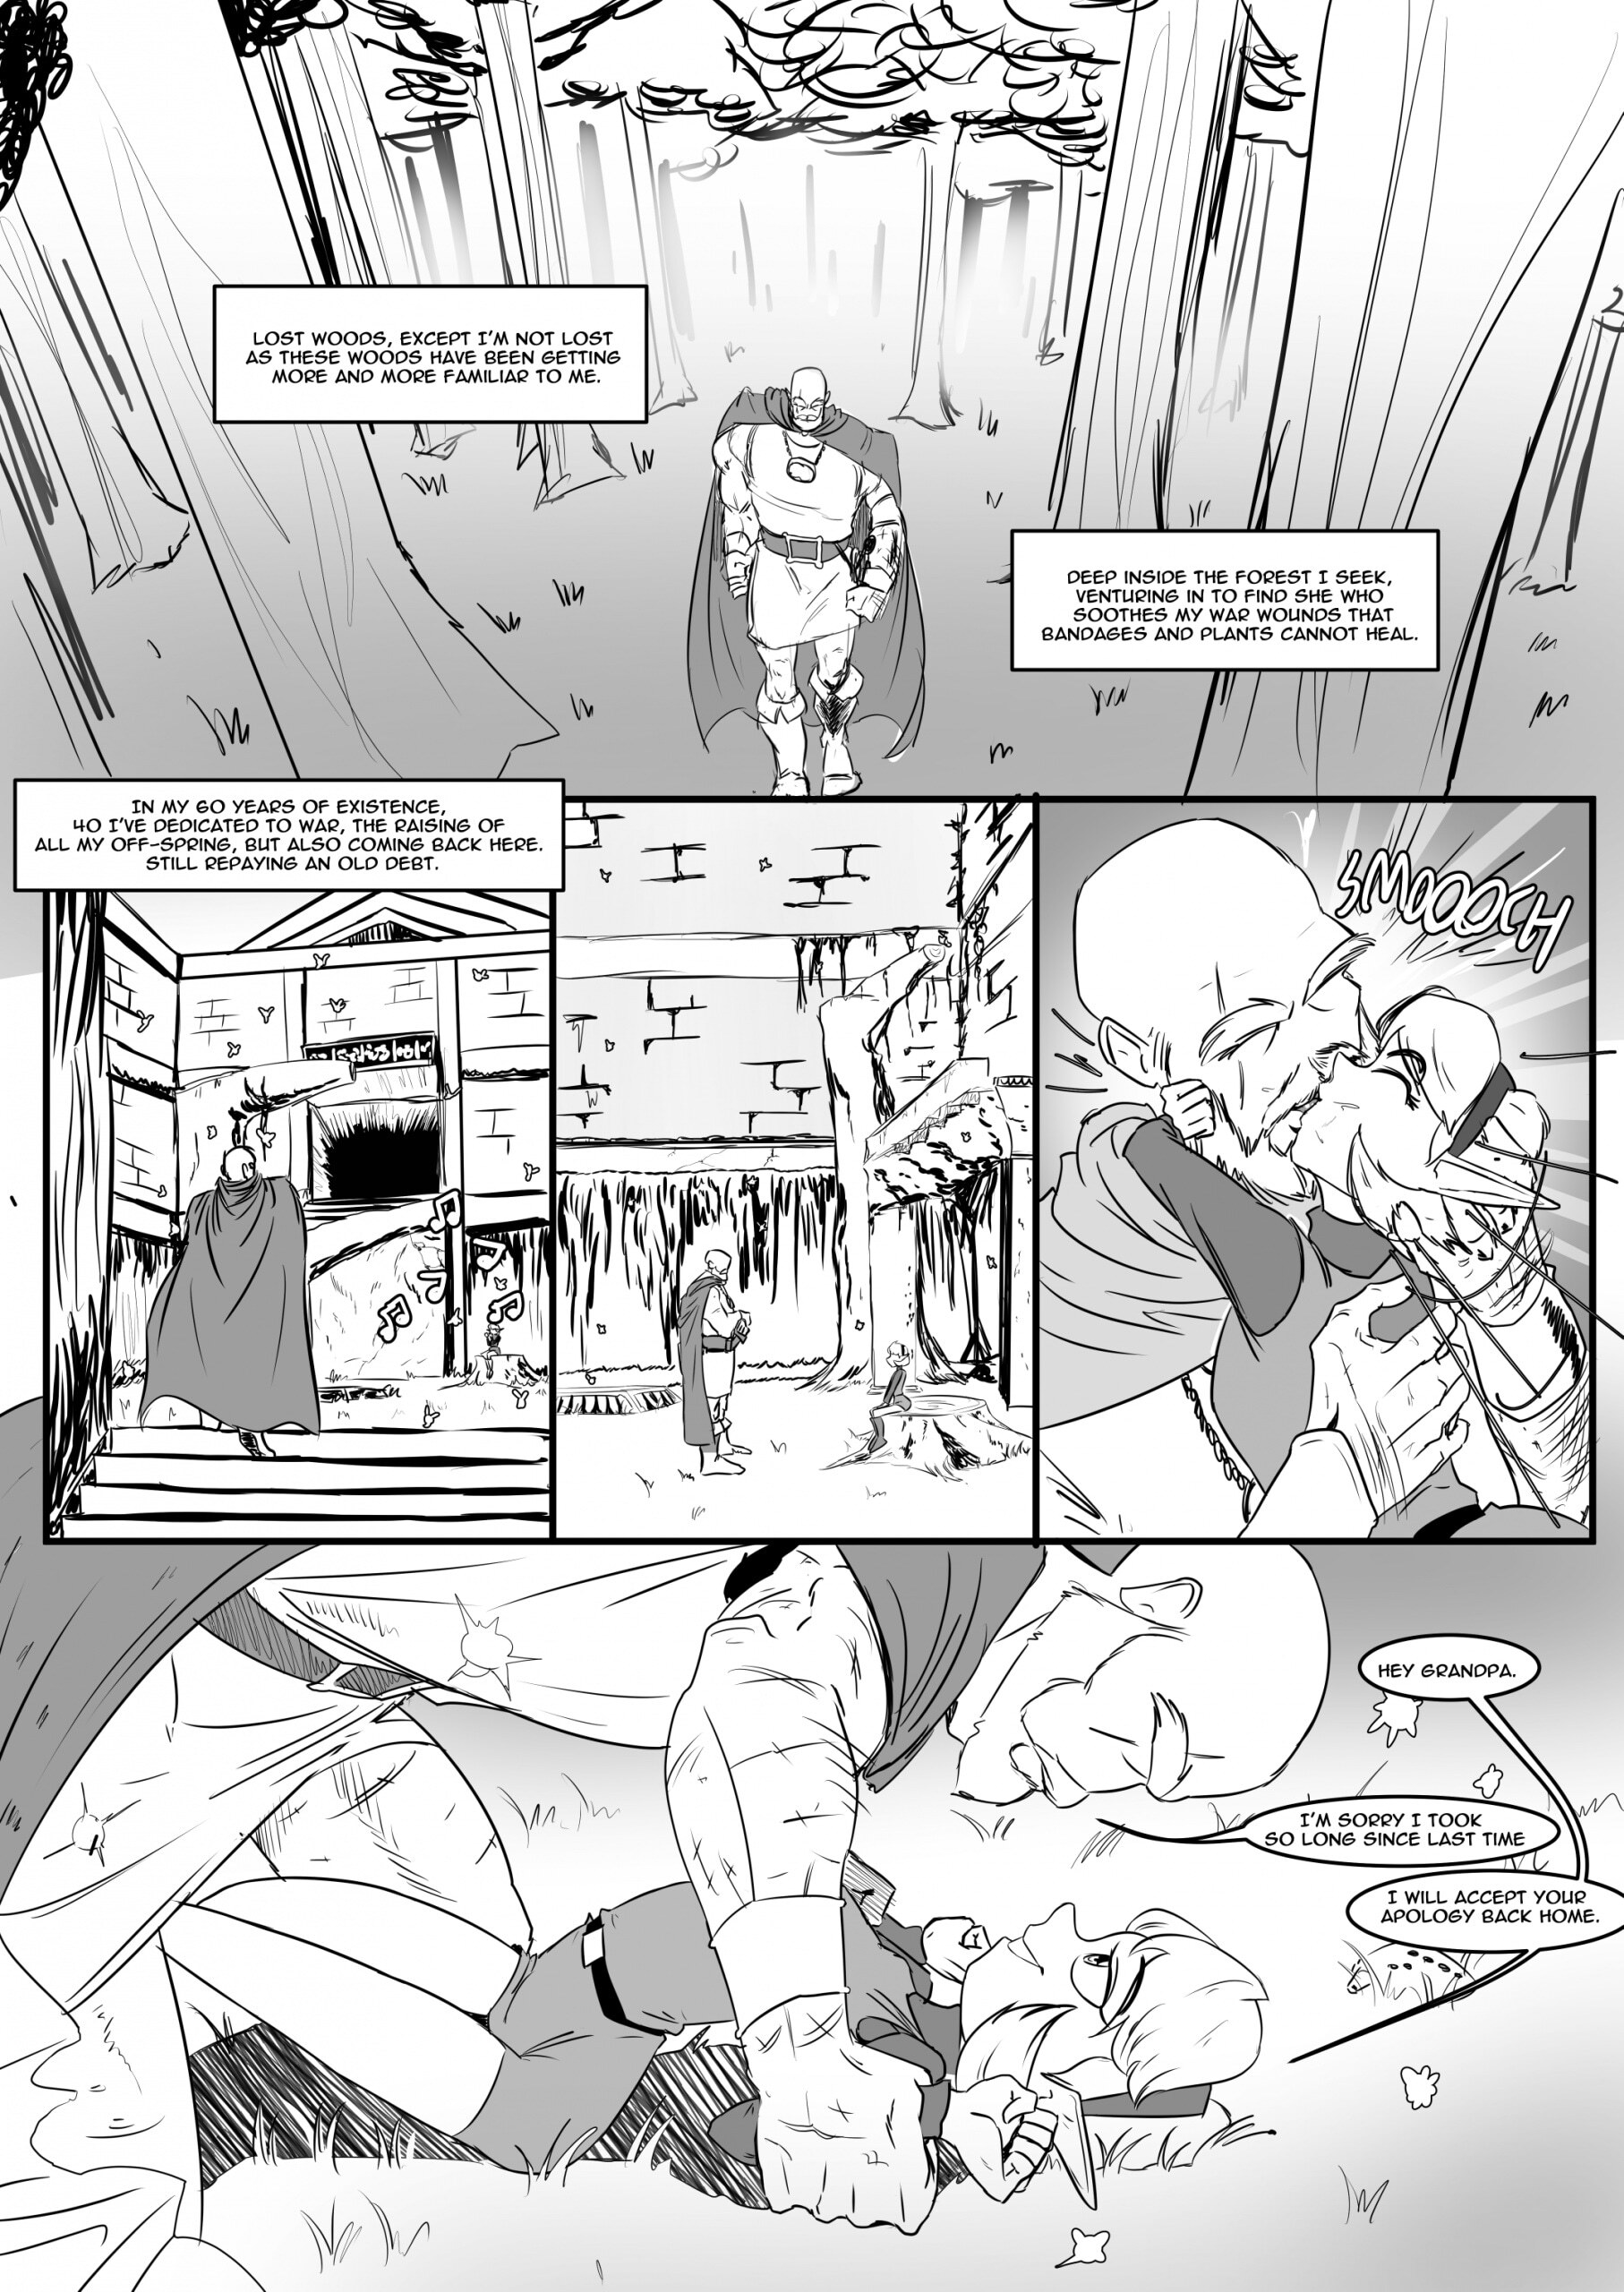 Timeless bond - Page 2